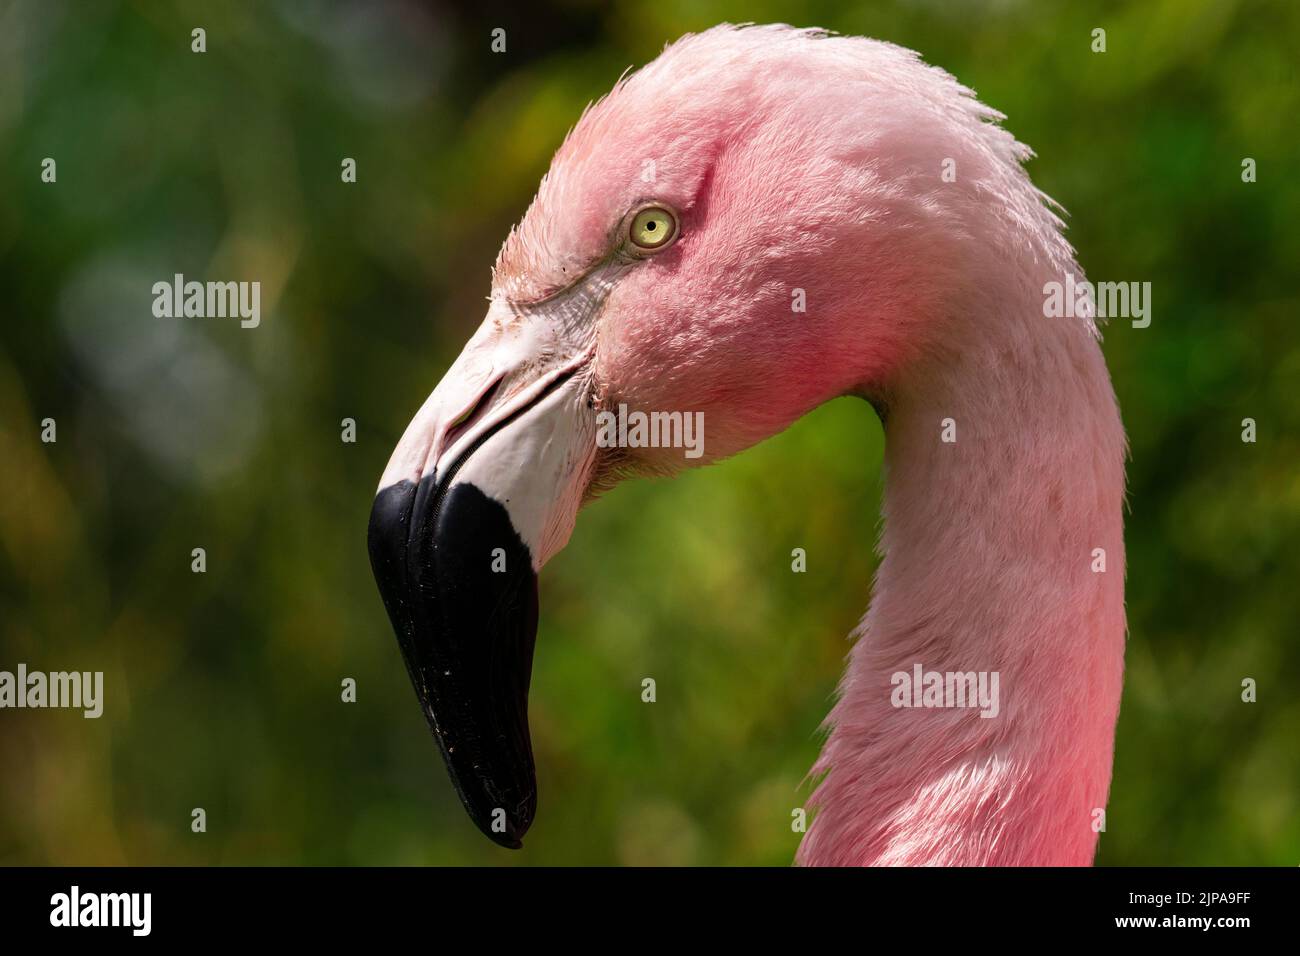 Eine Porträtaufnahme eines wunderschönen rosa chilenischen Flamingos mit tiefem schwarzen Schnabel und gelben Augen, die gerade und mit ernstem Gesichtsausdruck aussehen Stockfoto